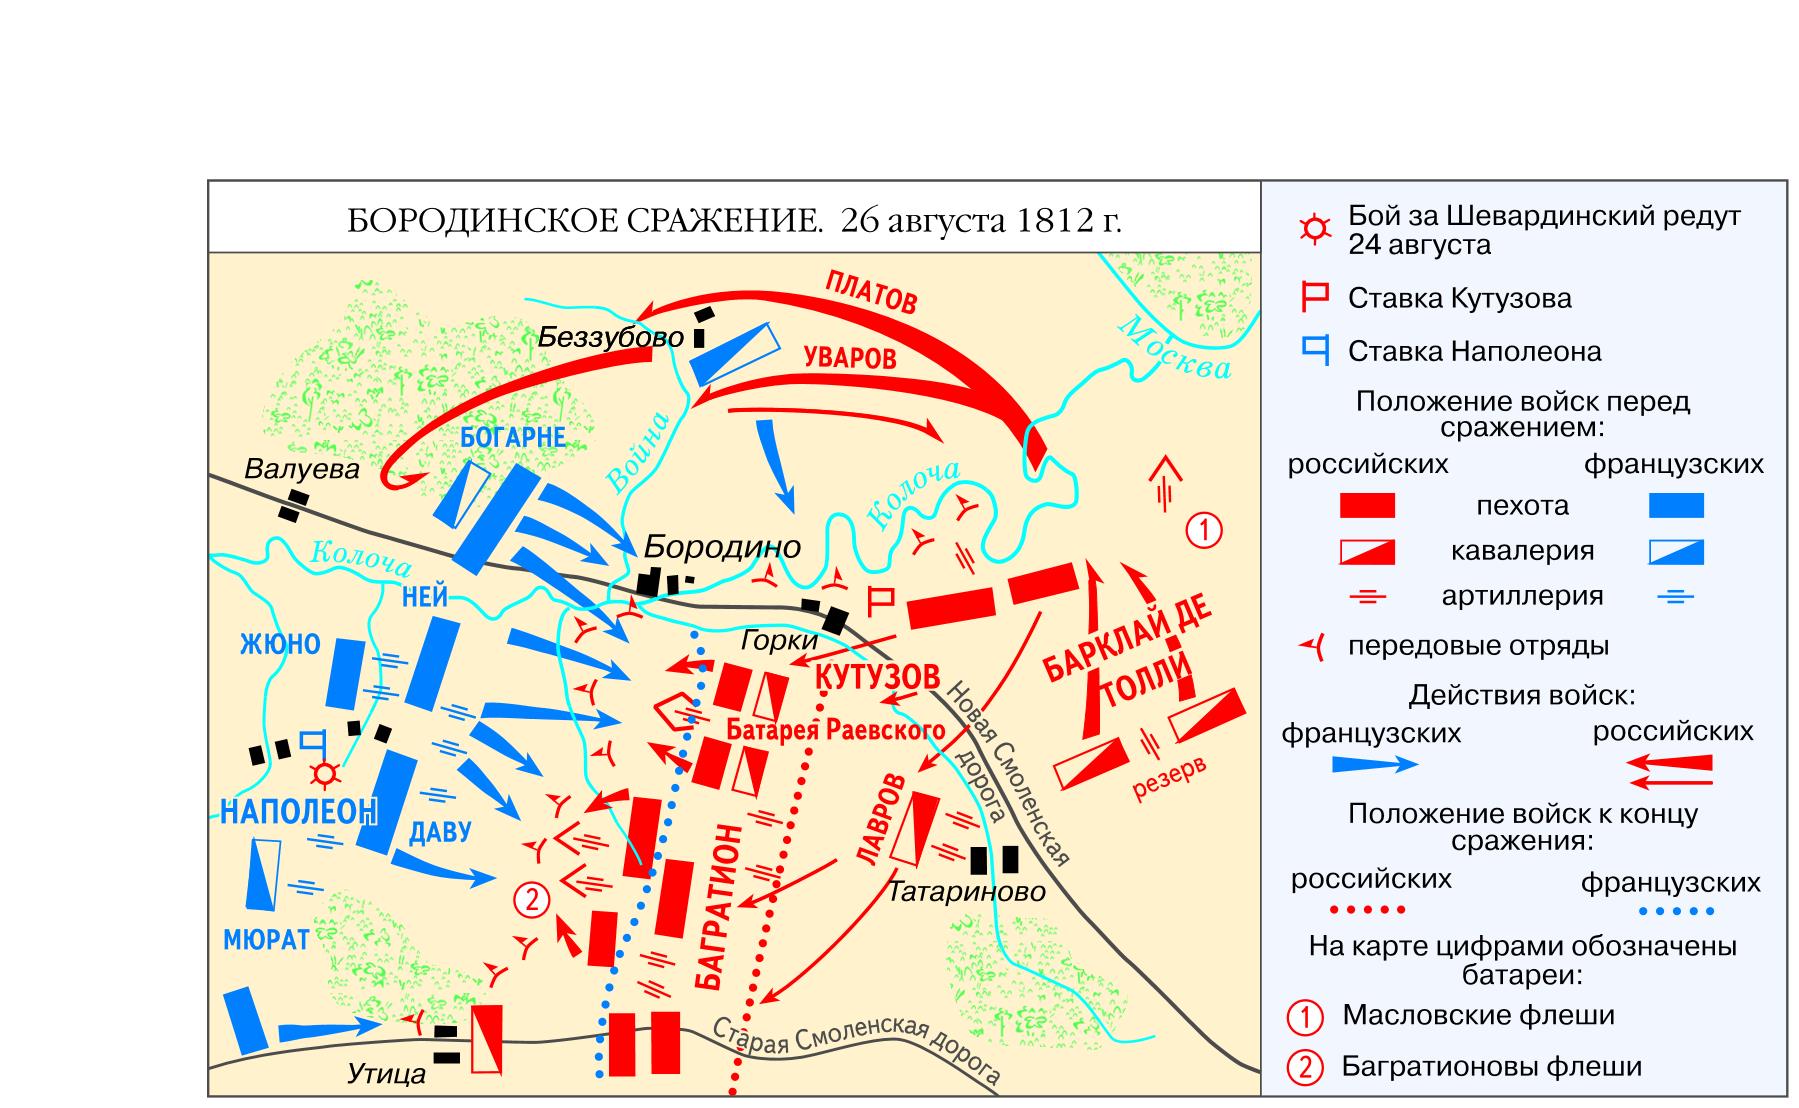 Диспозиция бородинского сражения. Бородинская битва 1812 схема битвы. Бородинское сражение 1812 схема боя.